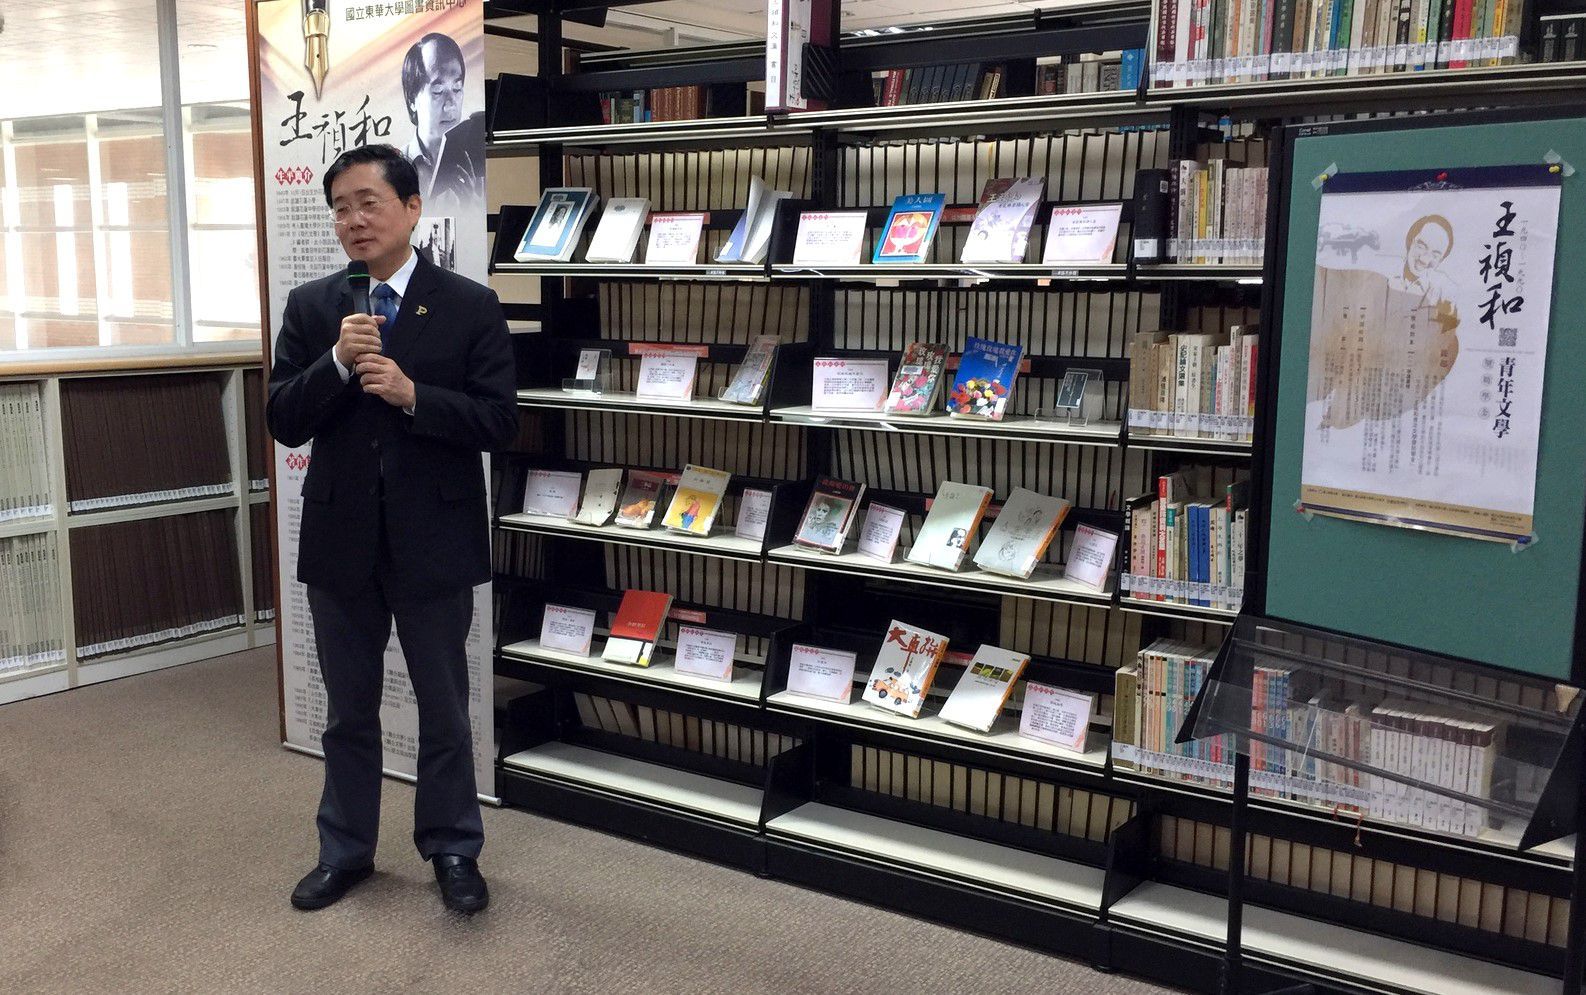 東華大學校長趙涵㨗感謝王禎和家人成立青年文學獎助學金，勉勵東華學生繼續在文學領域深入研究與創新。